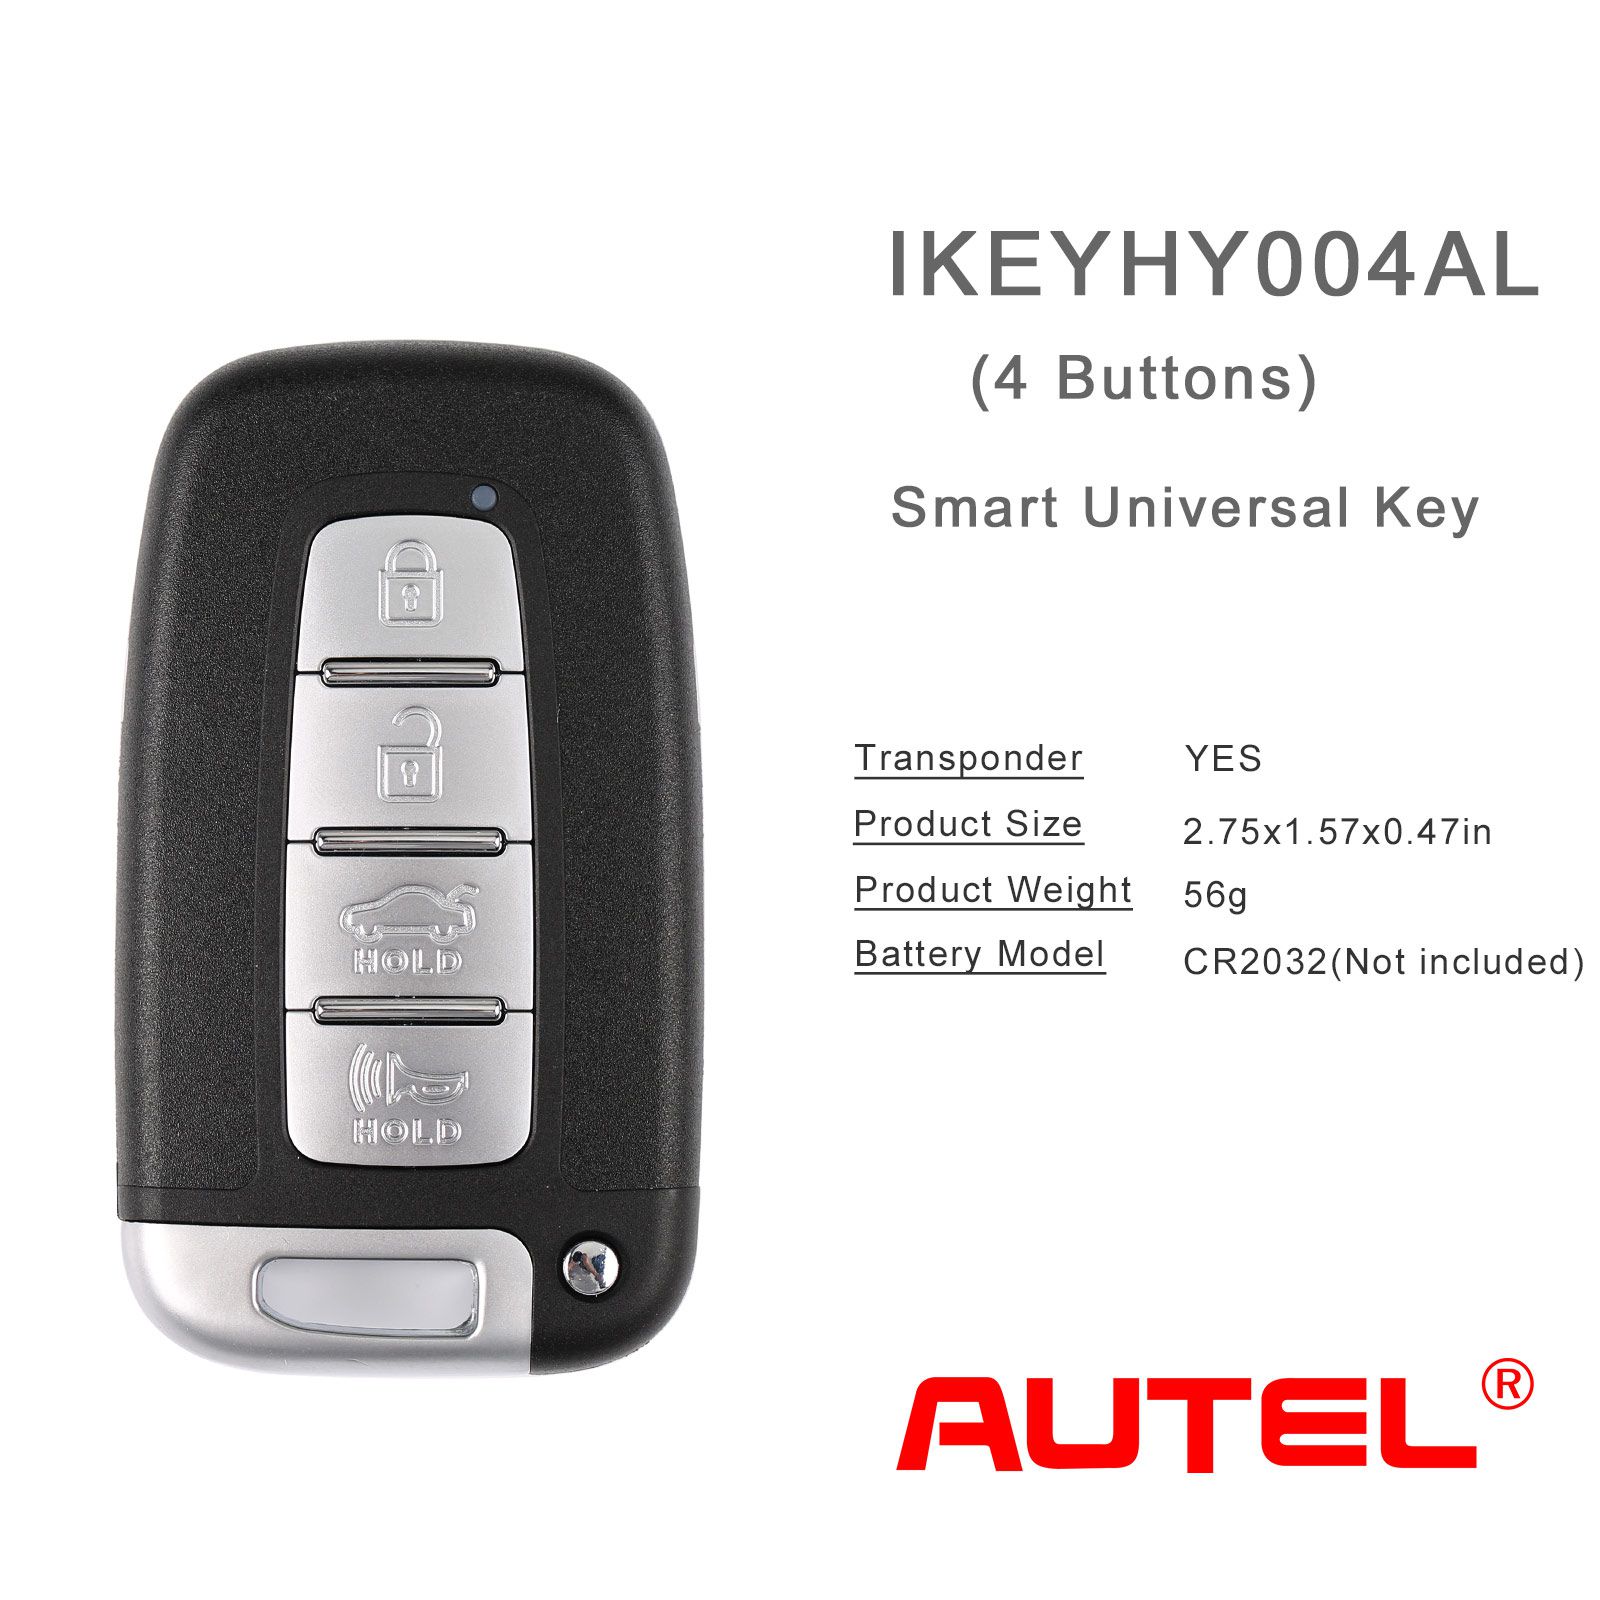 Autel ikeyhy004al Hyundai 4 botones llave inteligente universal 5 piezas / lote